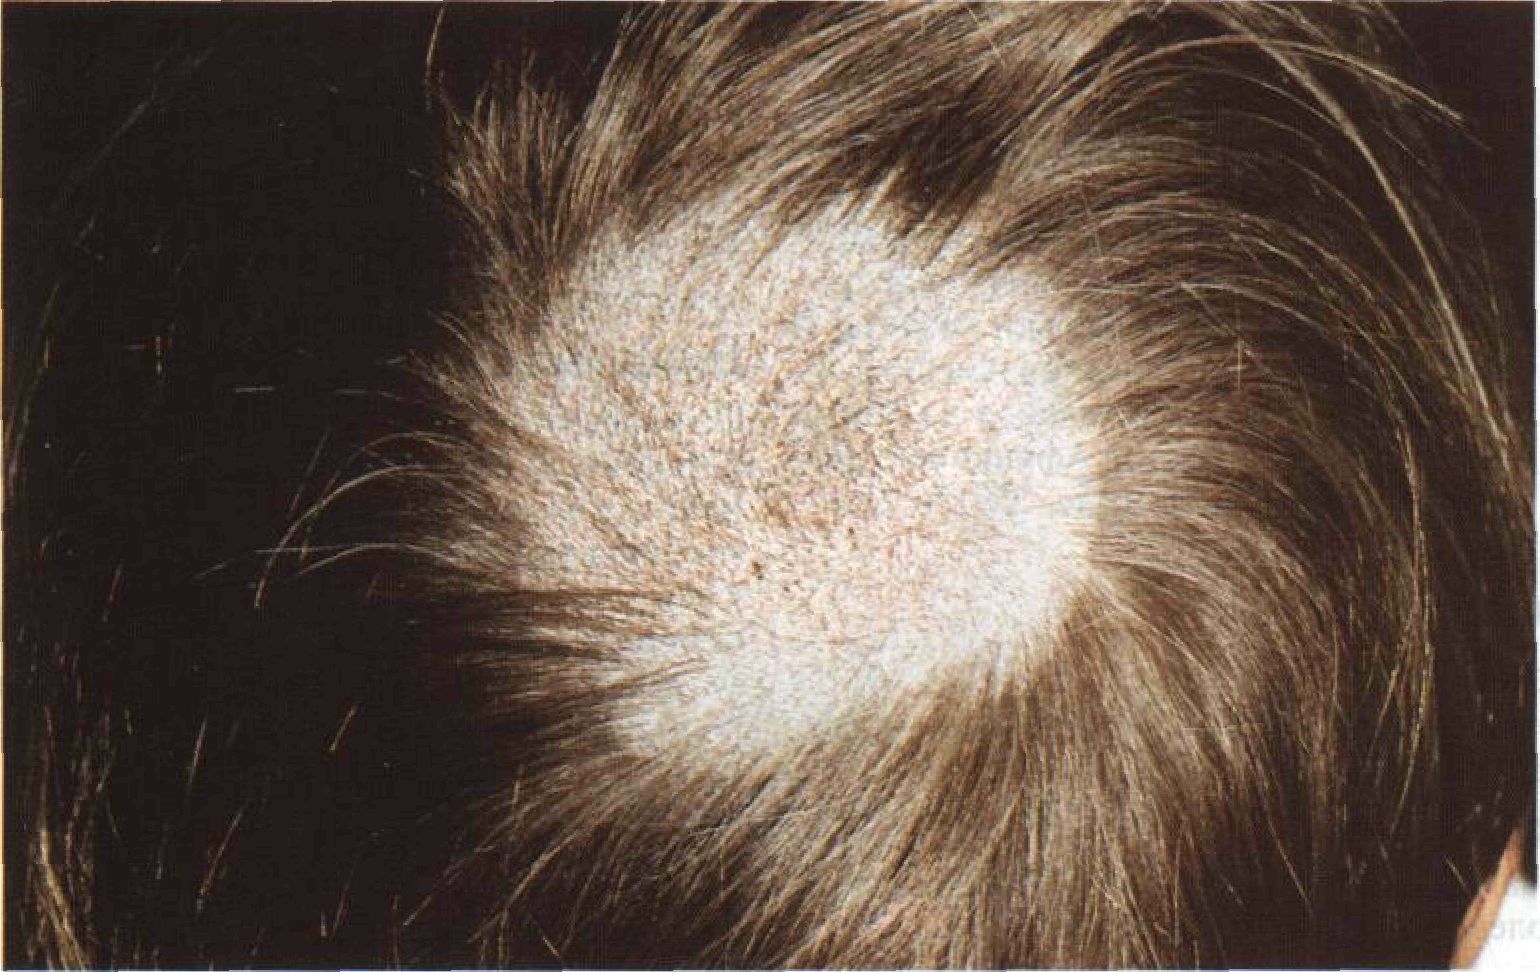 Проявления грибка кожи головы при поражении грибками животных (микроспория)